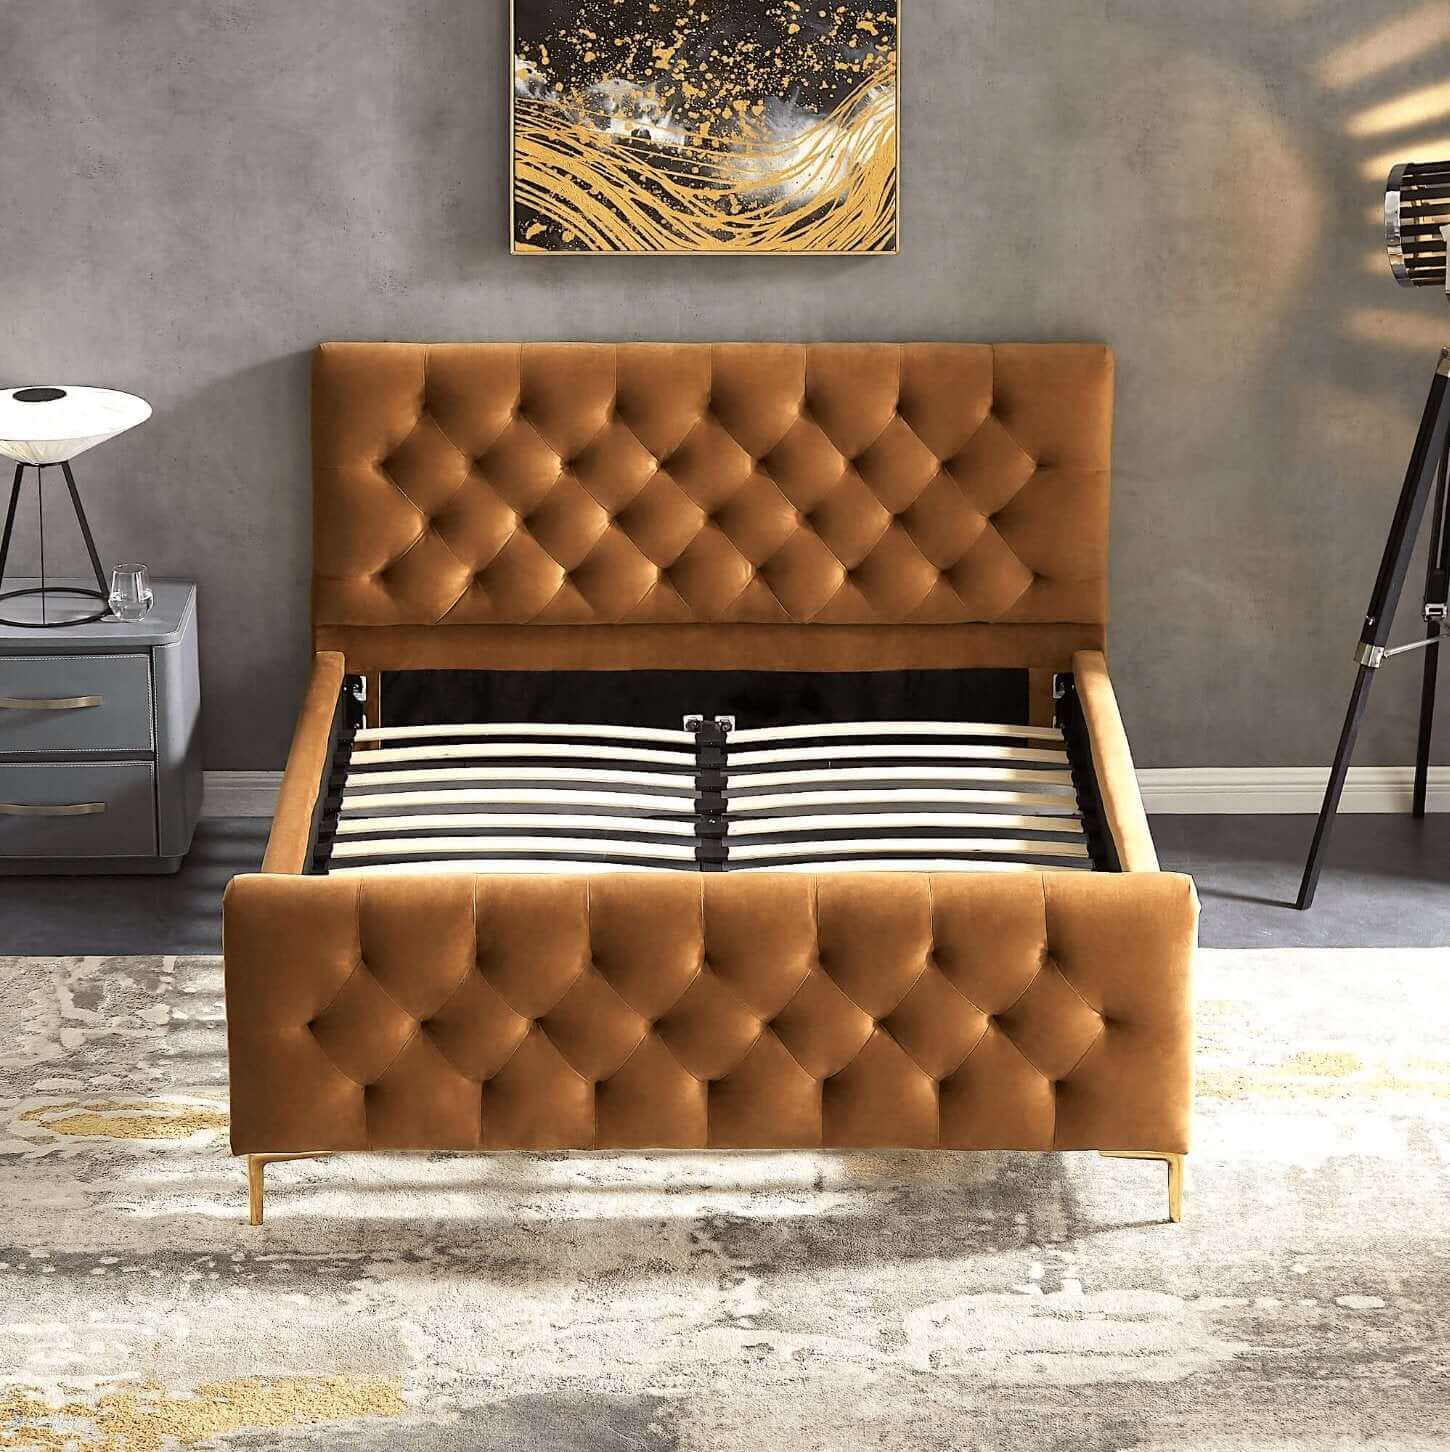 Bailey Velvet Upholstered Tufted Platform Bed Frame - Revel Sofa 